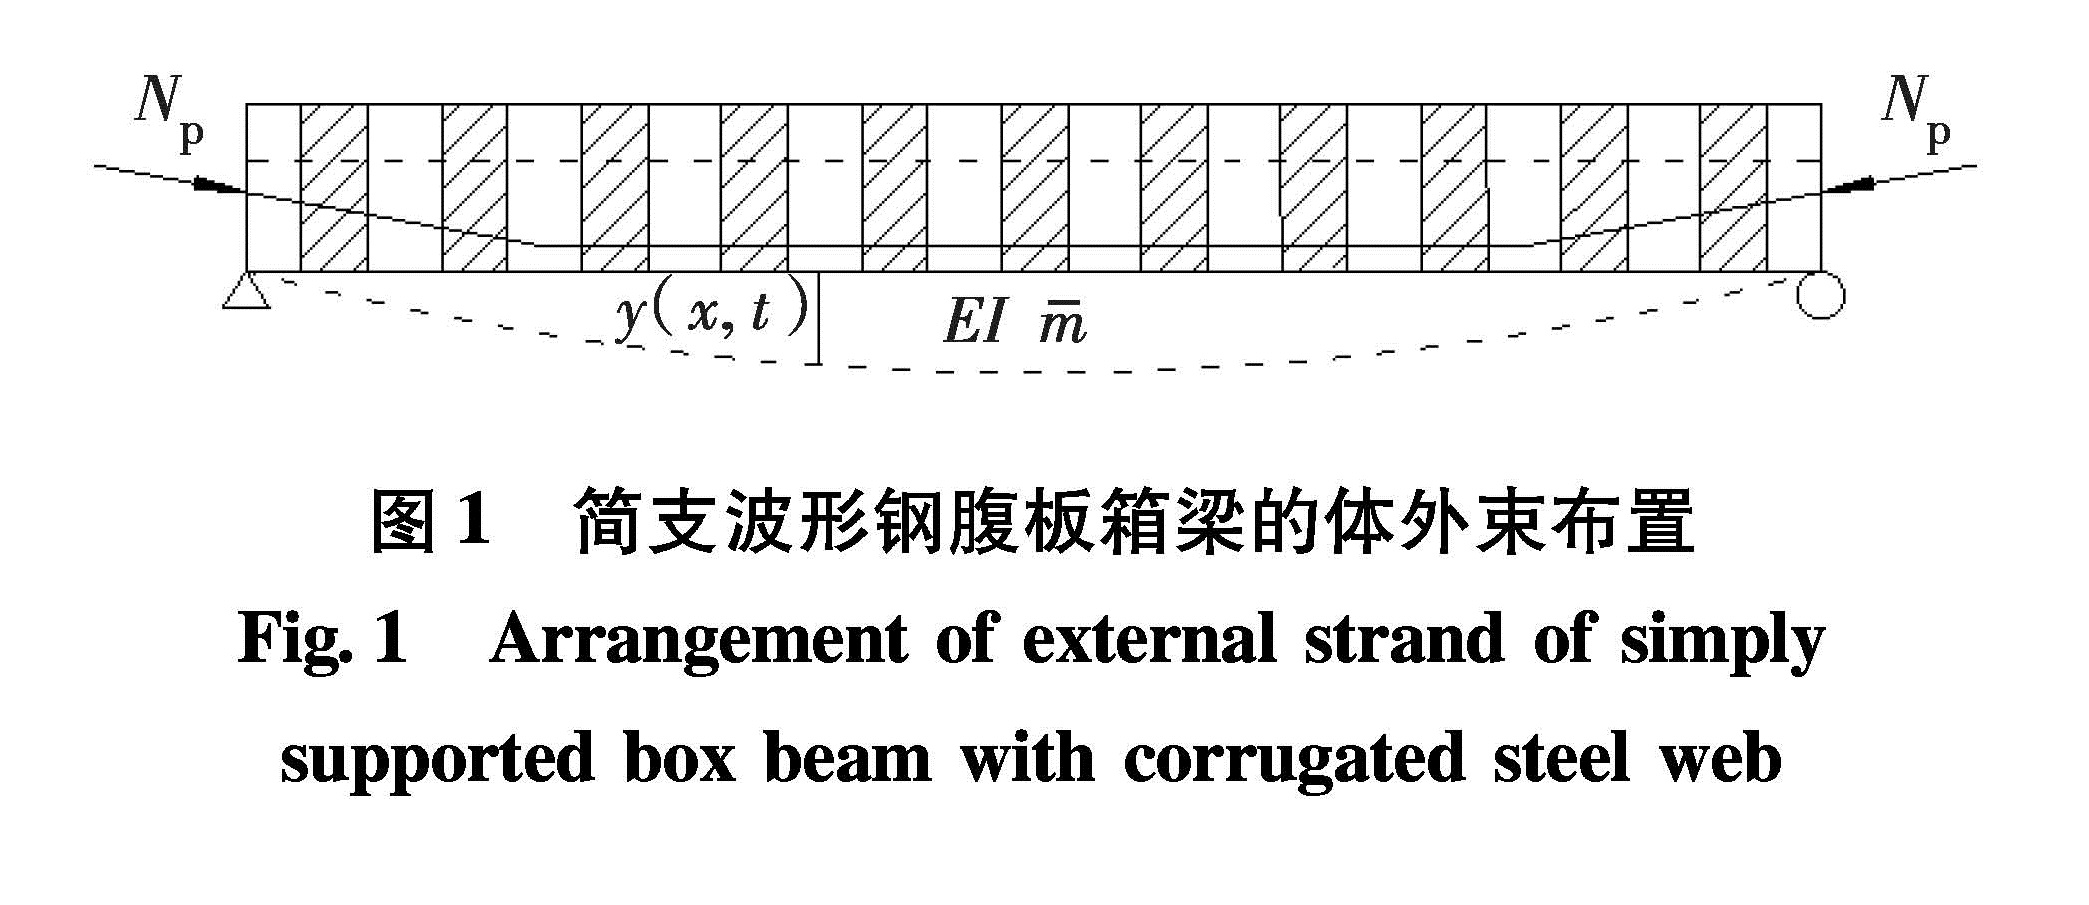 图1 简支波形钢腹板箱梁的体外束布置<br/>Fig.1 Arrangement of external strand of simply supported box beam with corrugated steel web